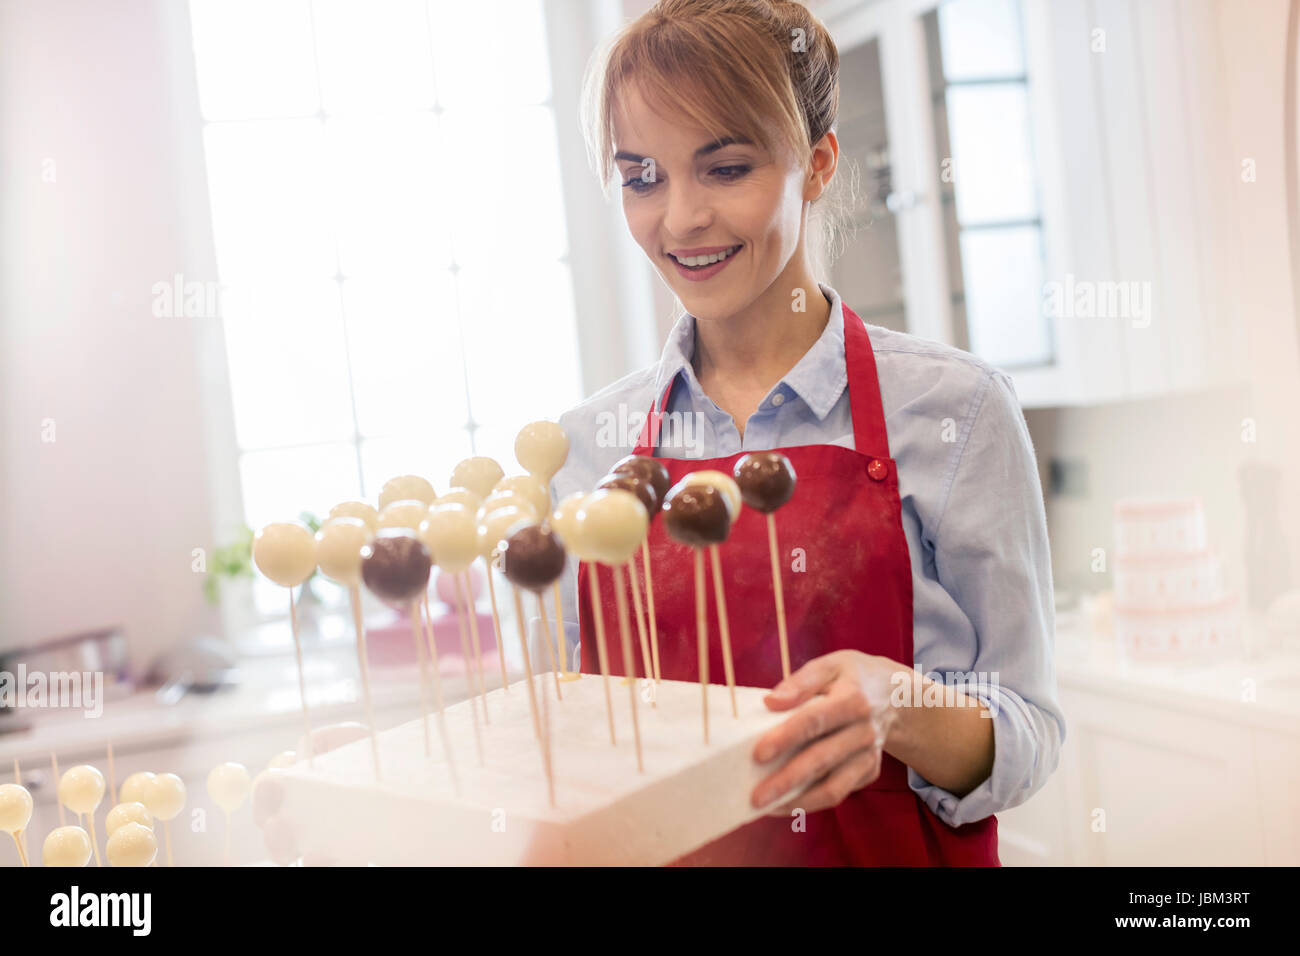 Lächelnd weibliche Caterer backen Kuchen pops in Küche Stockfoto